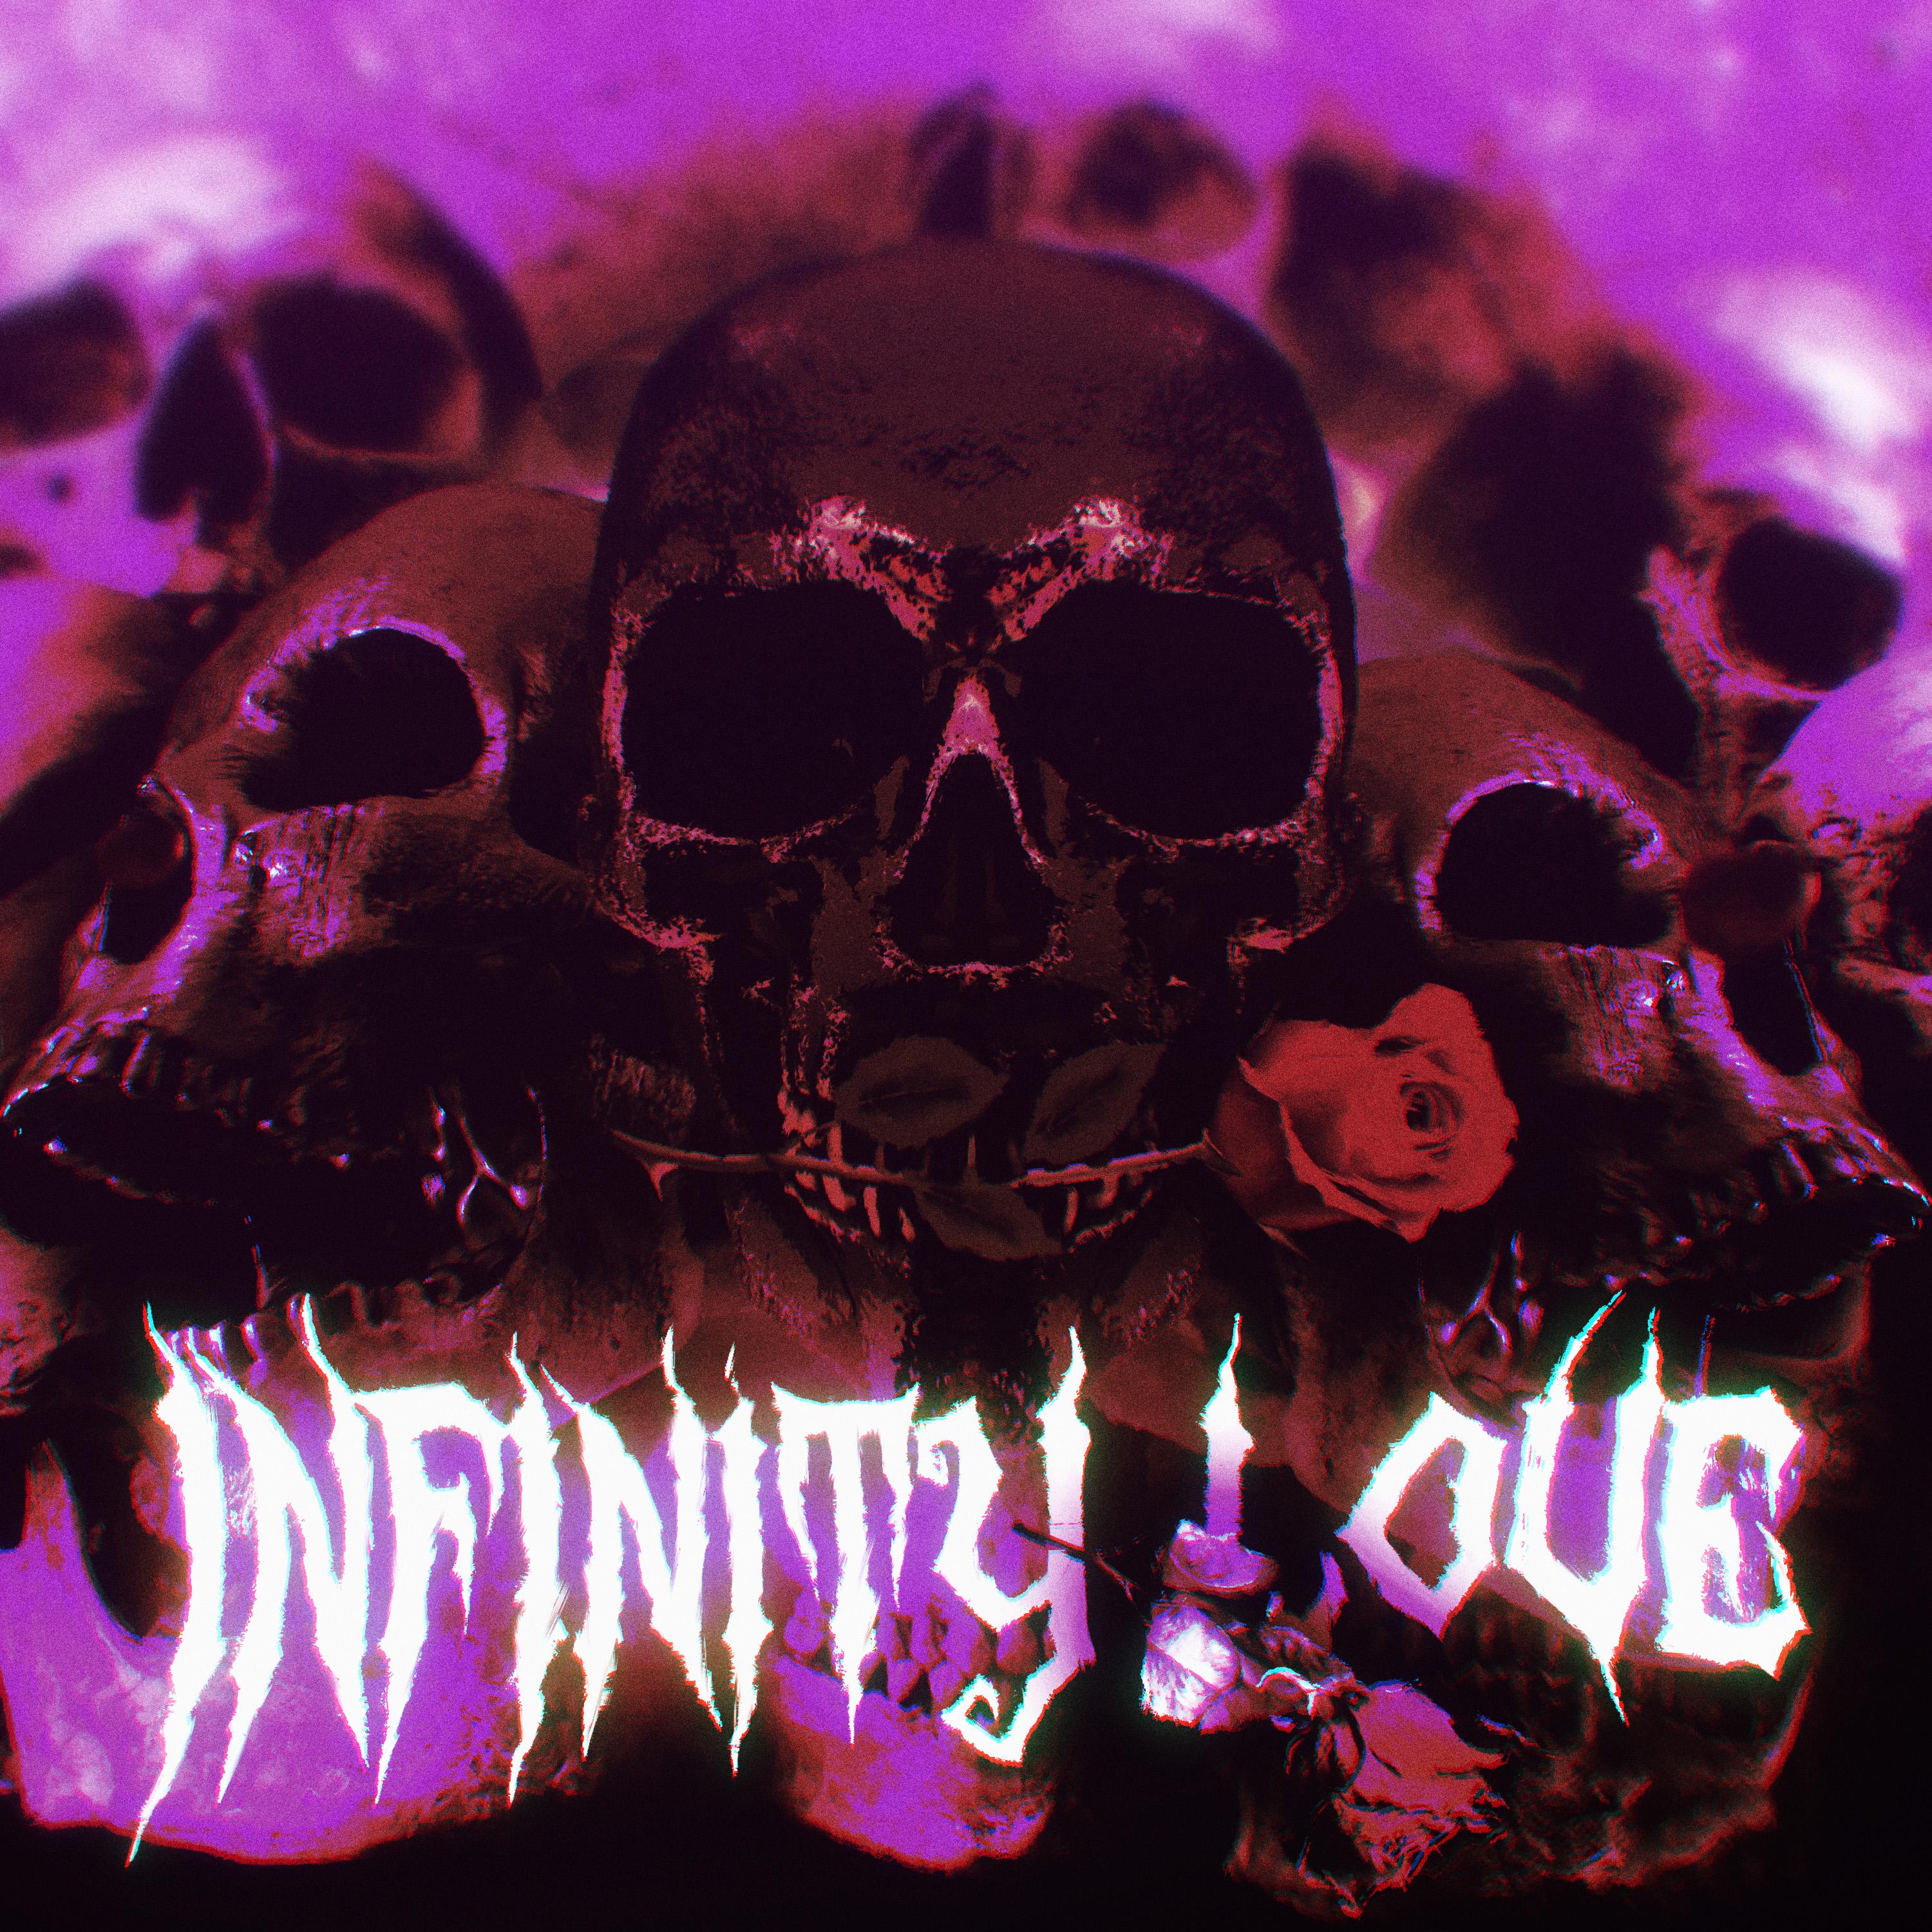 Постер альбома Infinity Love